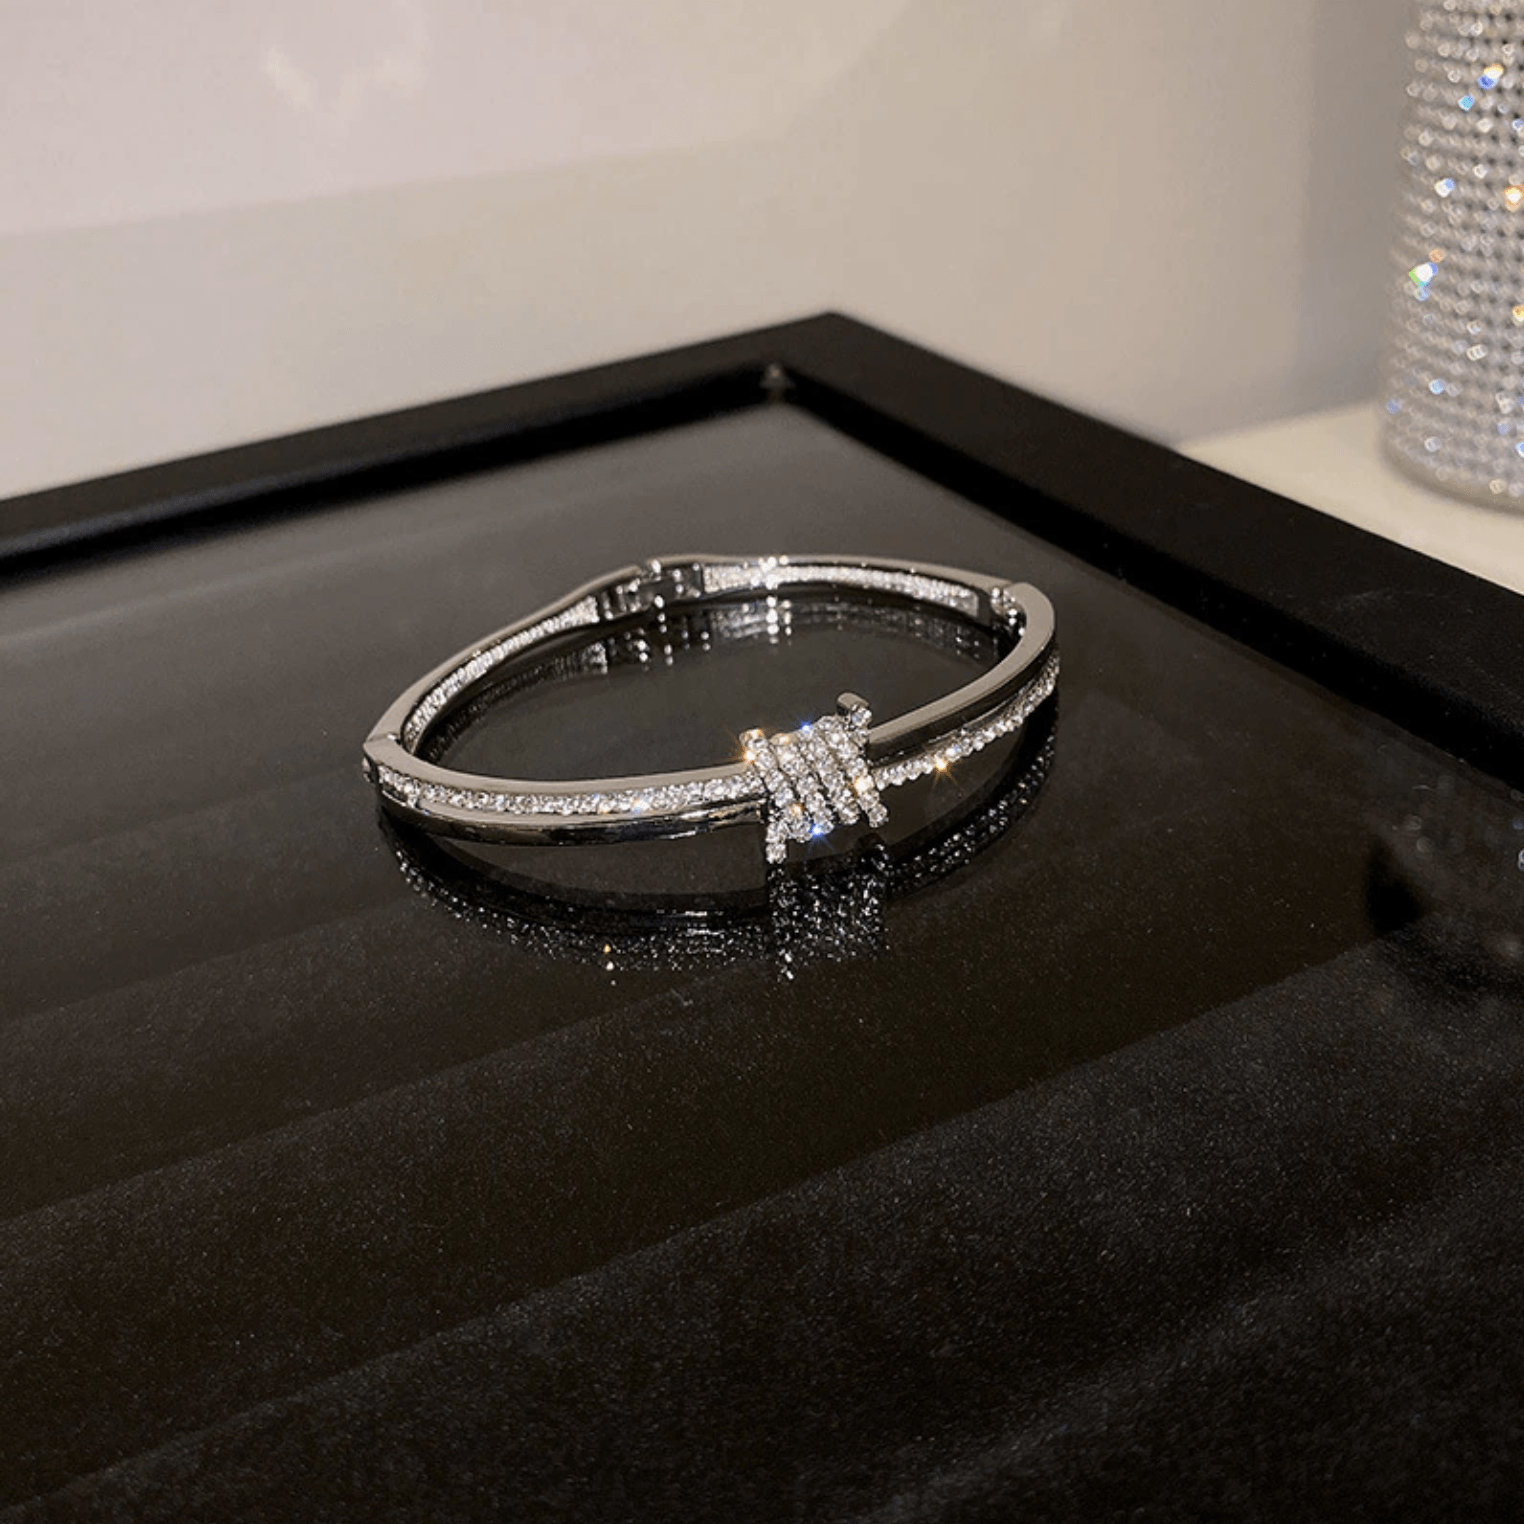 The Emma Twisted Knot Bracelet - I Spy Jewelry